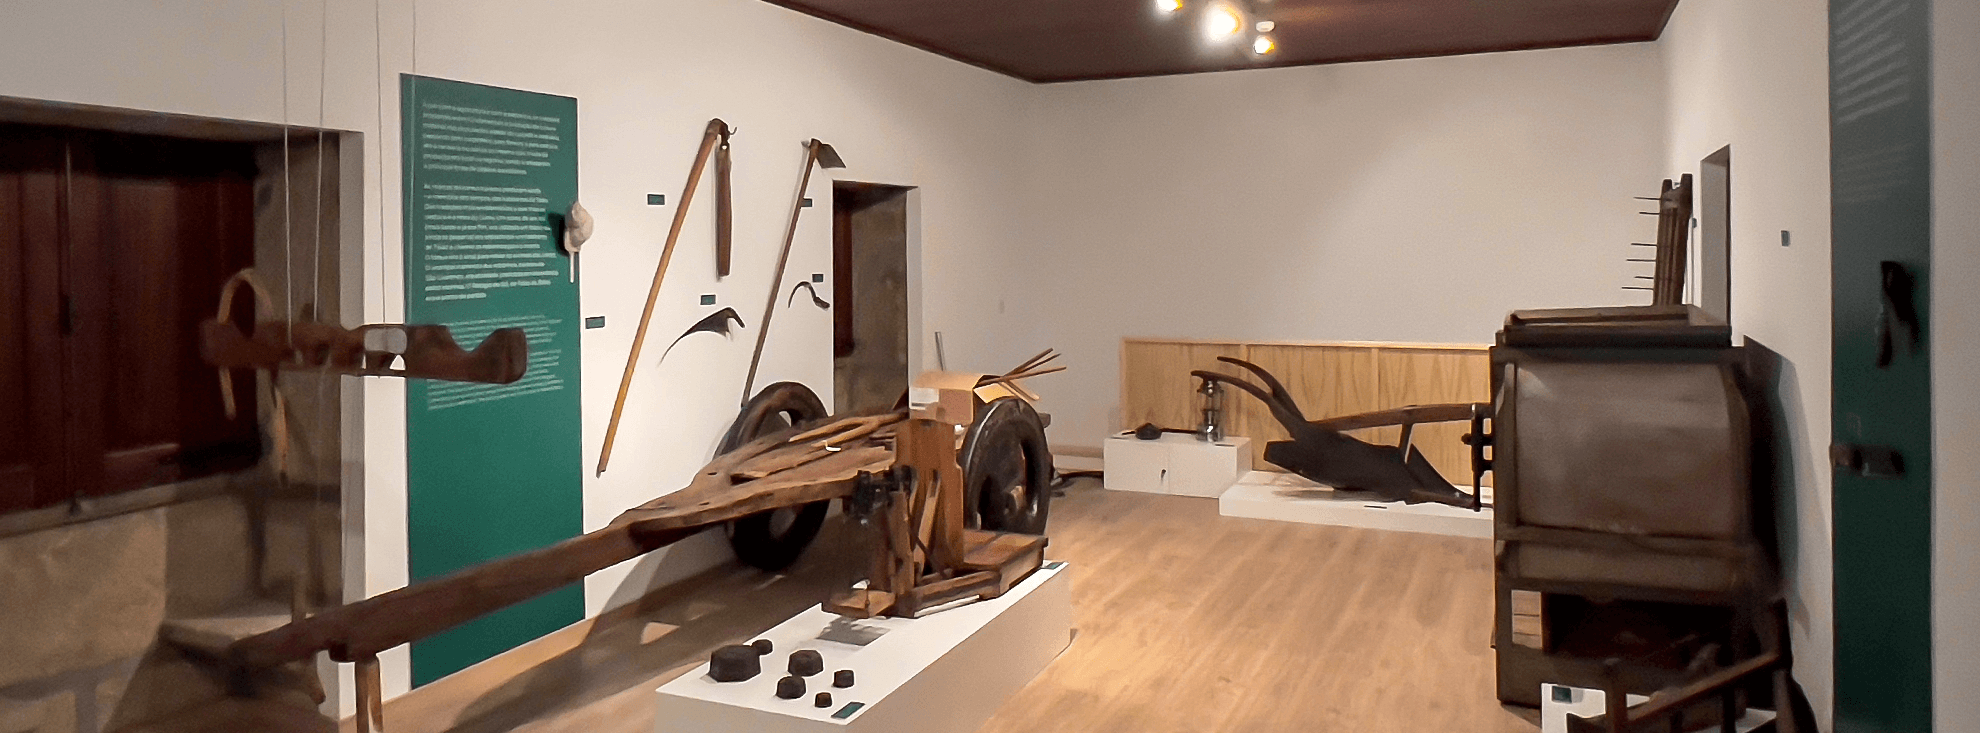 Núcleo Museológico de Taião